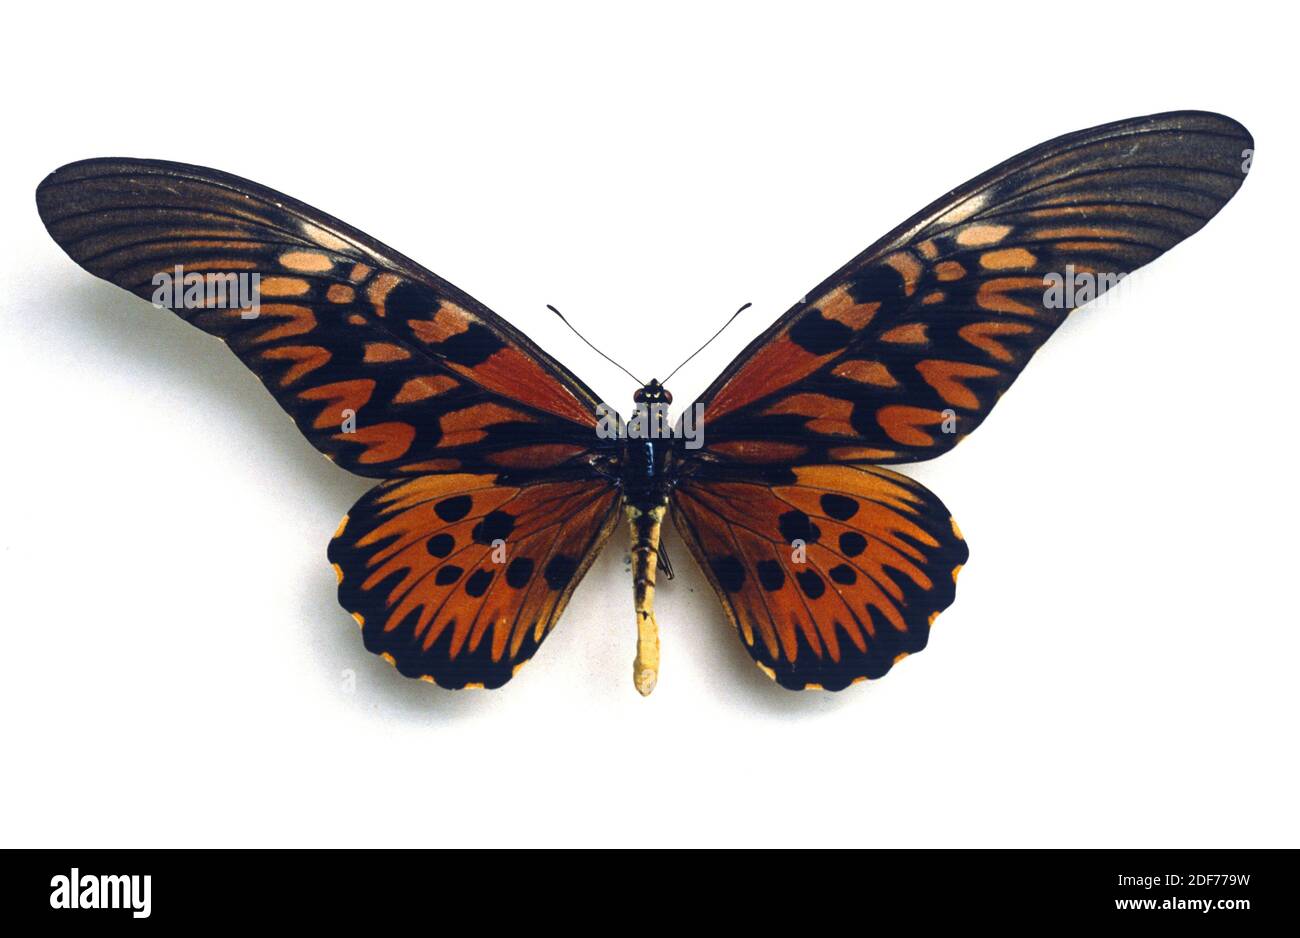 Afrikanischer Riesenschwanzschwalbenschwanz (Papilio antimachus) ist ein großer Schmetterling, der in Zentral- und Westafrika beheimatet ist. Erwachsene, dorsale Seite. Stockfoto